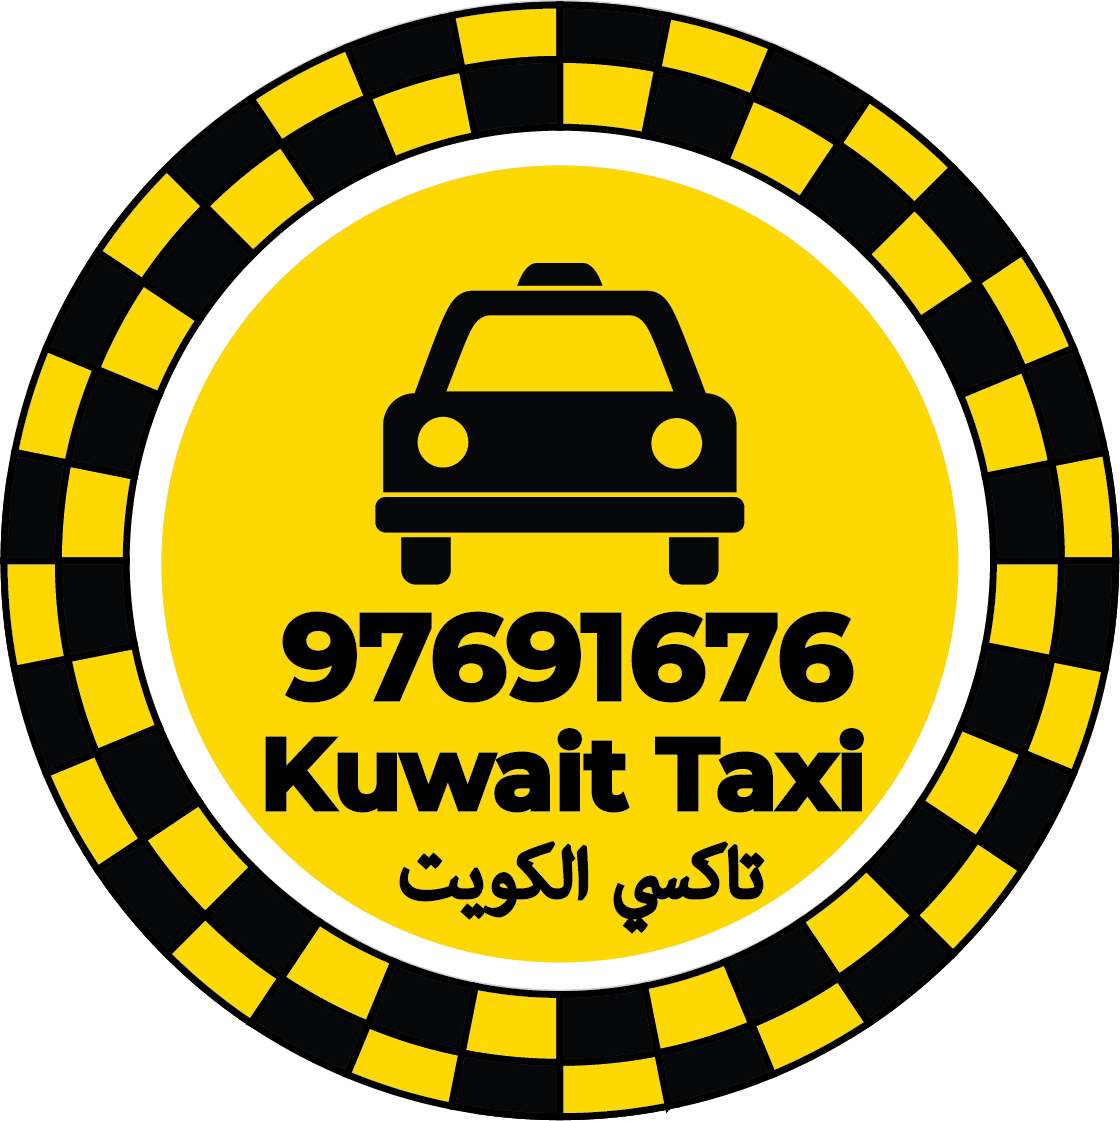 رقم تاكسي فهد الأحمد - تكسي فهد الأحمد الكويت